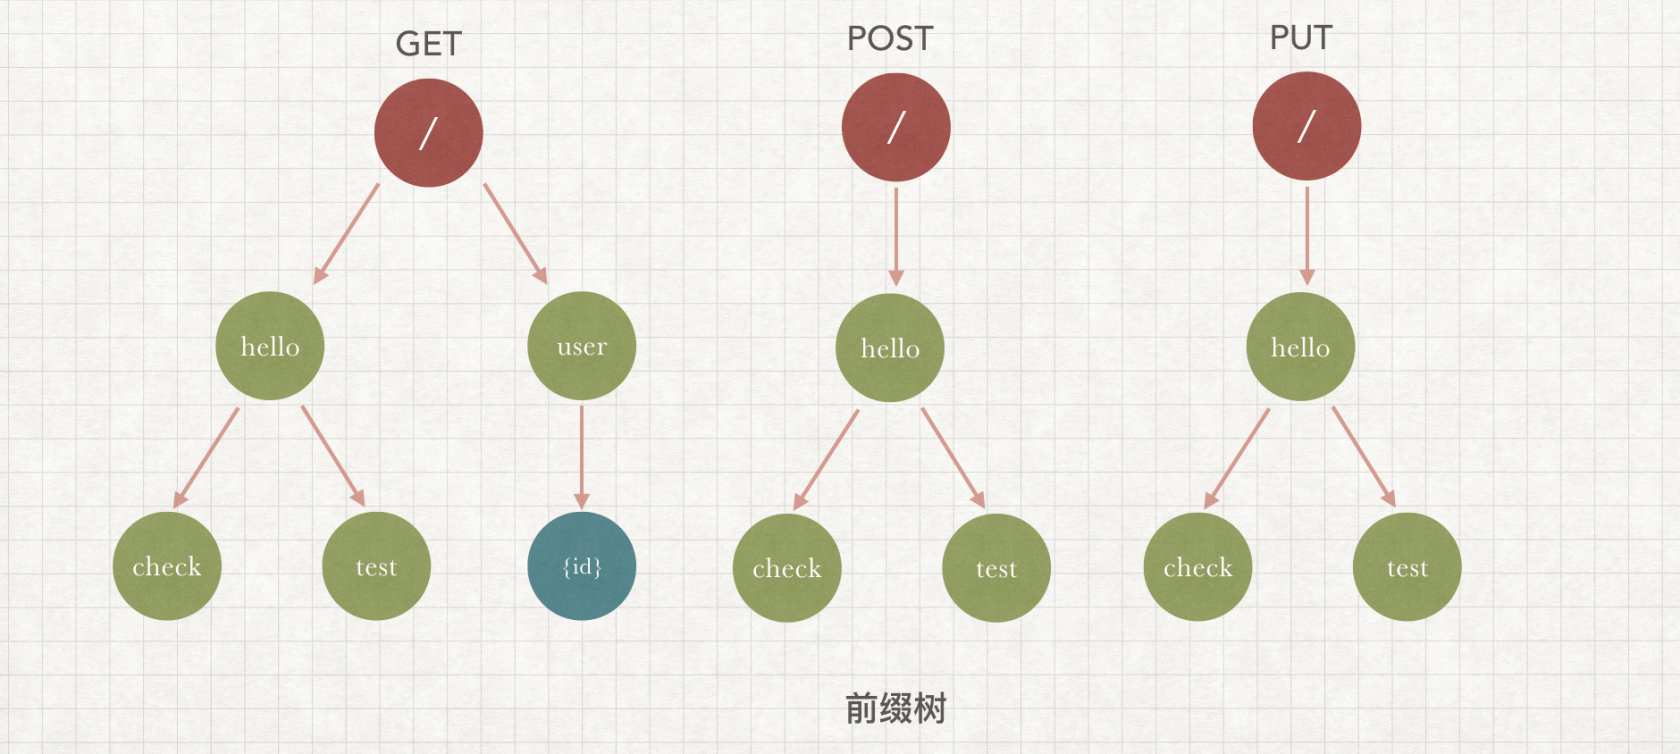 对比了一下各种语言 http 框架的路由实现原理